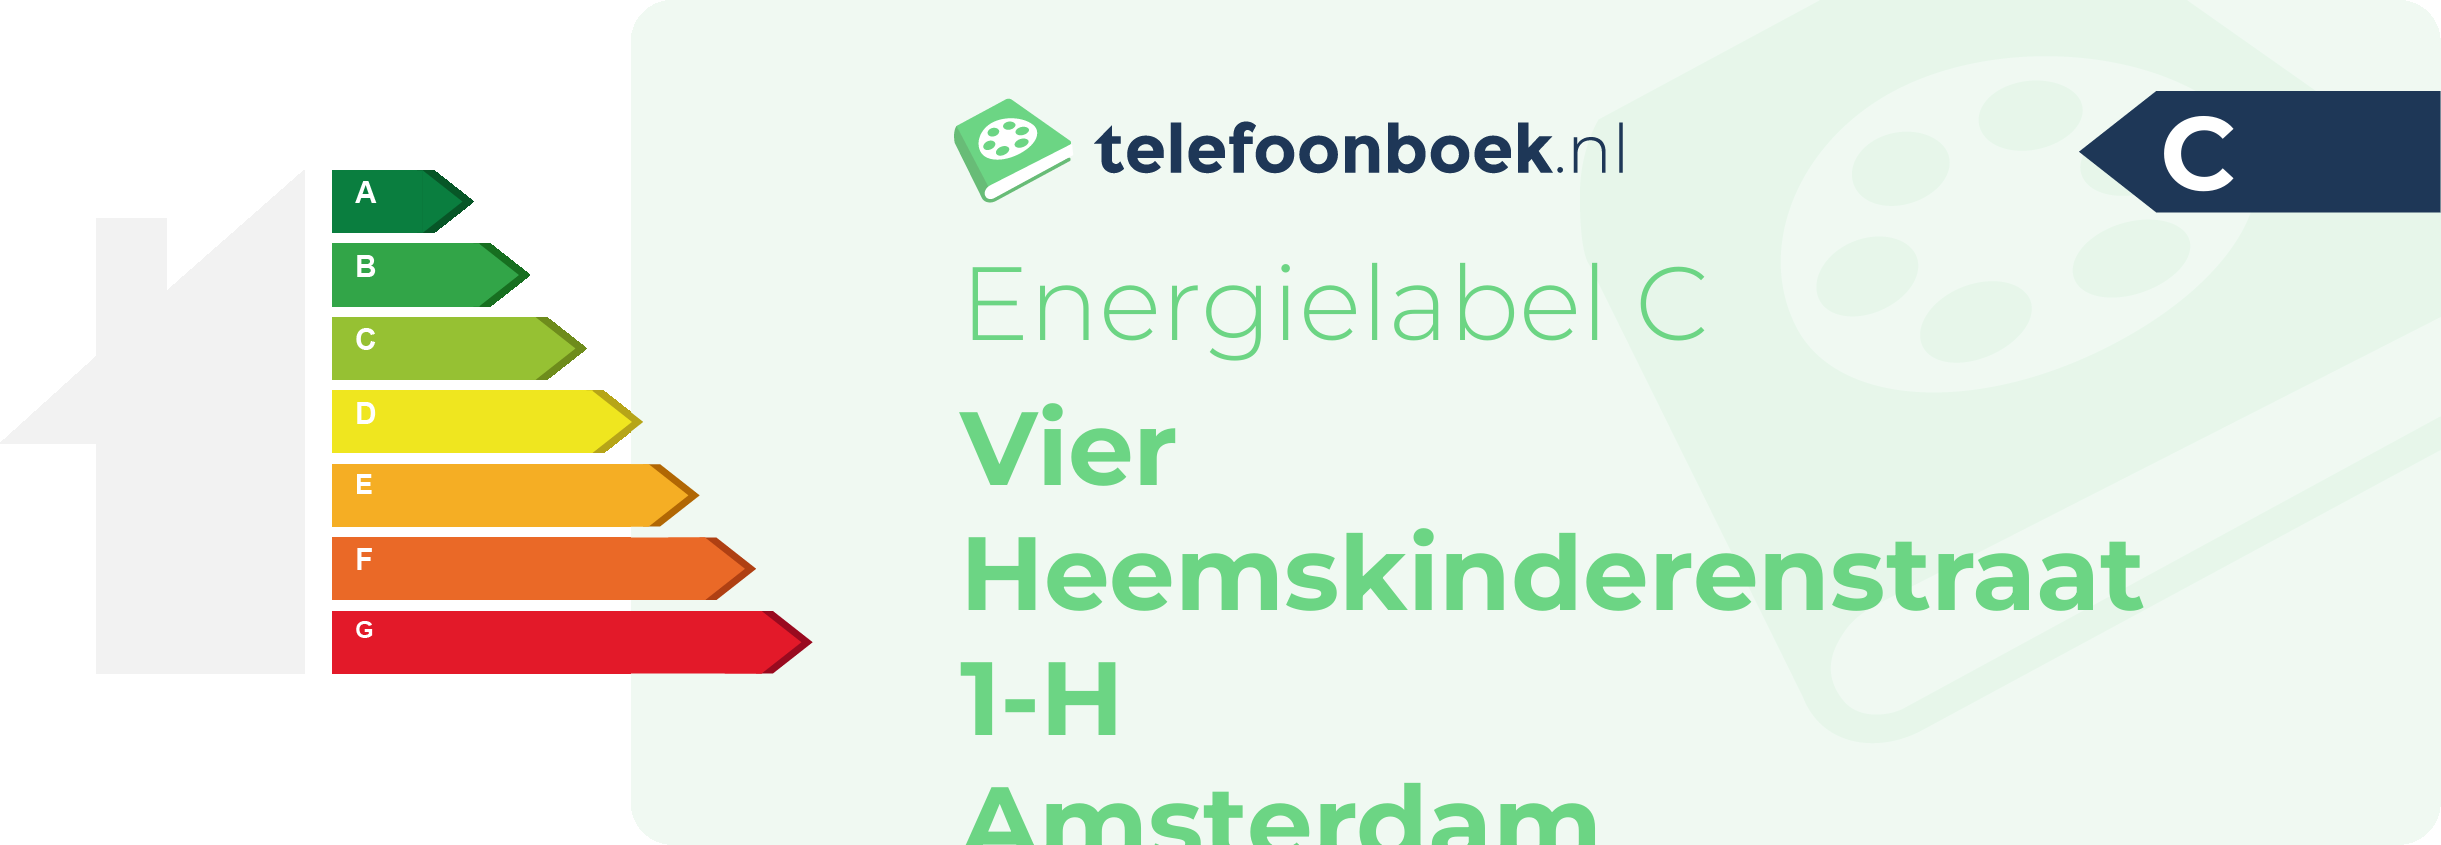 Energielabel Vier Heemskinderenstraat 1-H Amsterdam